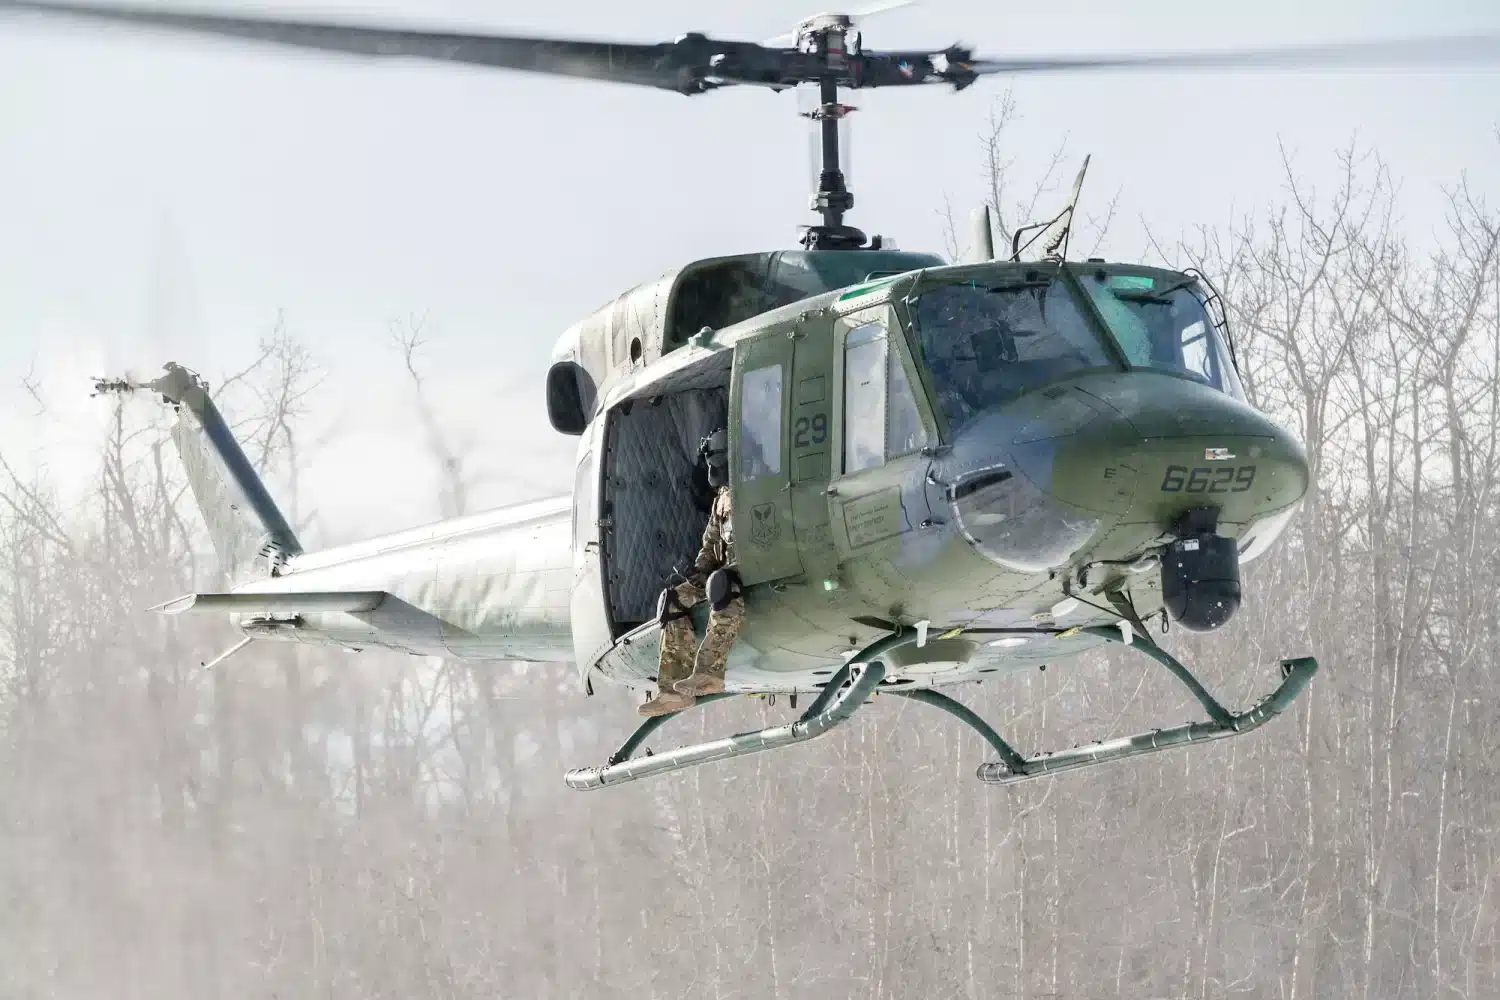 UH-1N Huey, empregado na segurança dos silos e bases de ICBM, será substituído pelo MH-139. Foto: USAF.